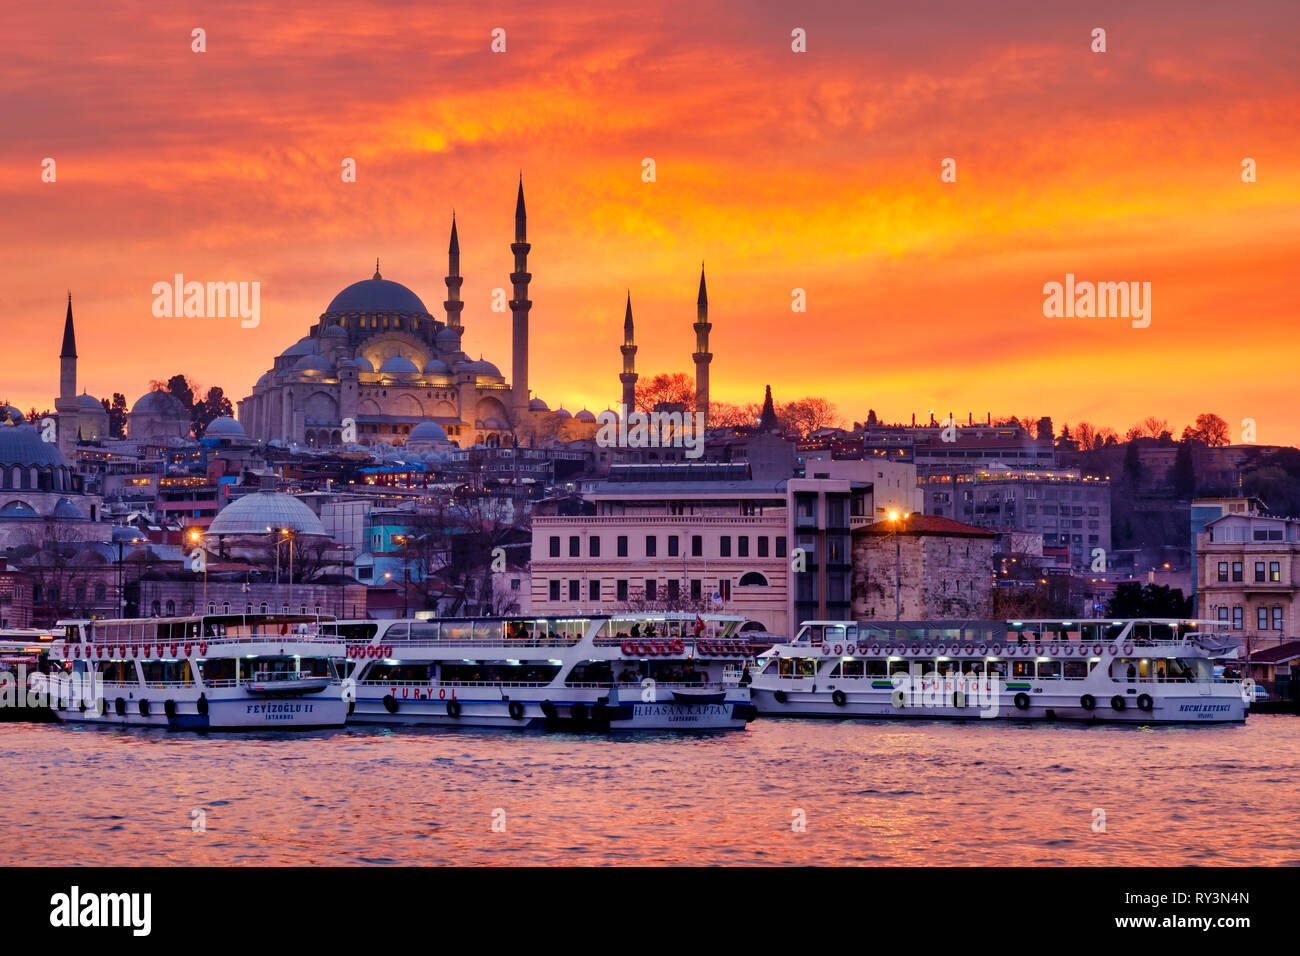 Con el distrito de Fatih Mezquita Süleymaniye y el Eminönü square , Estambul, Turquía Foto de stock